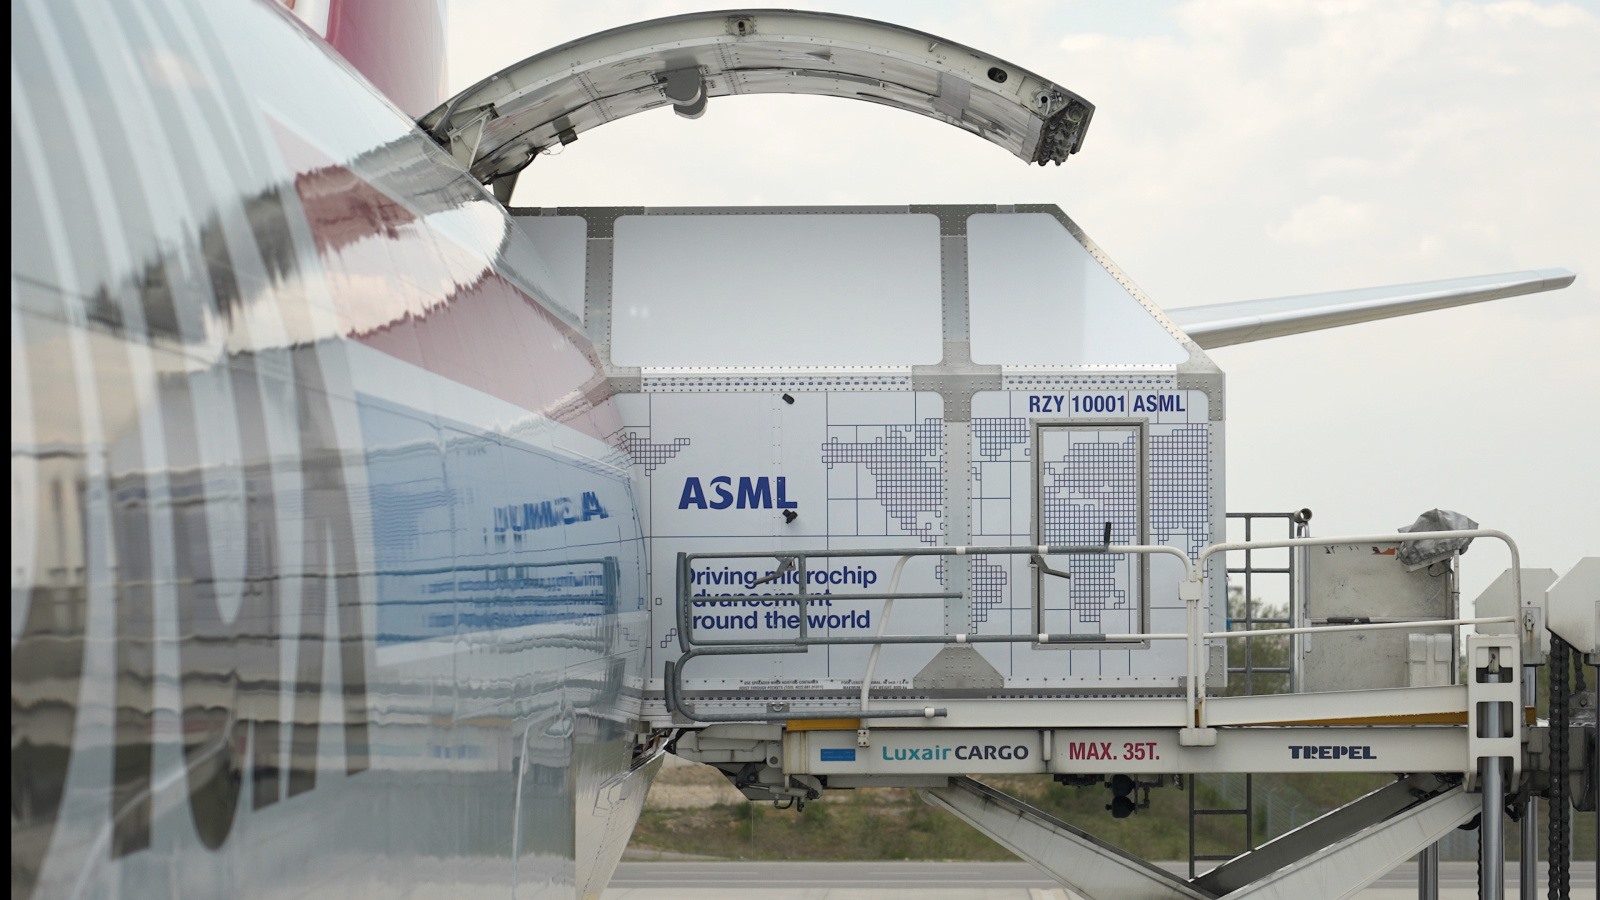 ASML cho biết, Eindhoven đóng vai trò quan trọng với sự phát triển của công ty nhờ kinh nghiệm hàng thế kỷ về sản xuất công nghệ cao. Ảnh: ASML